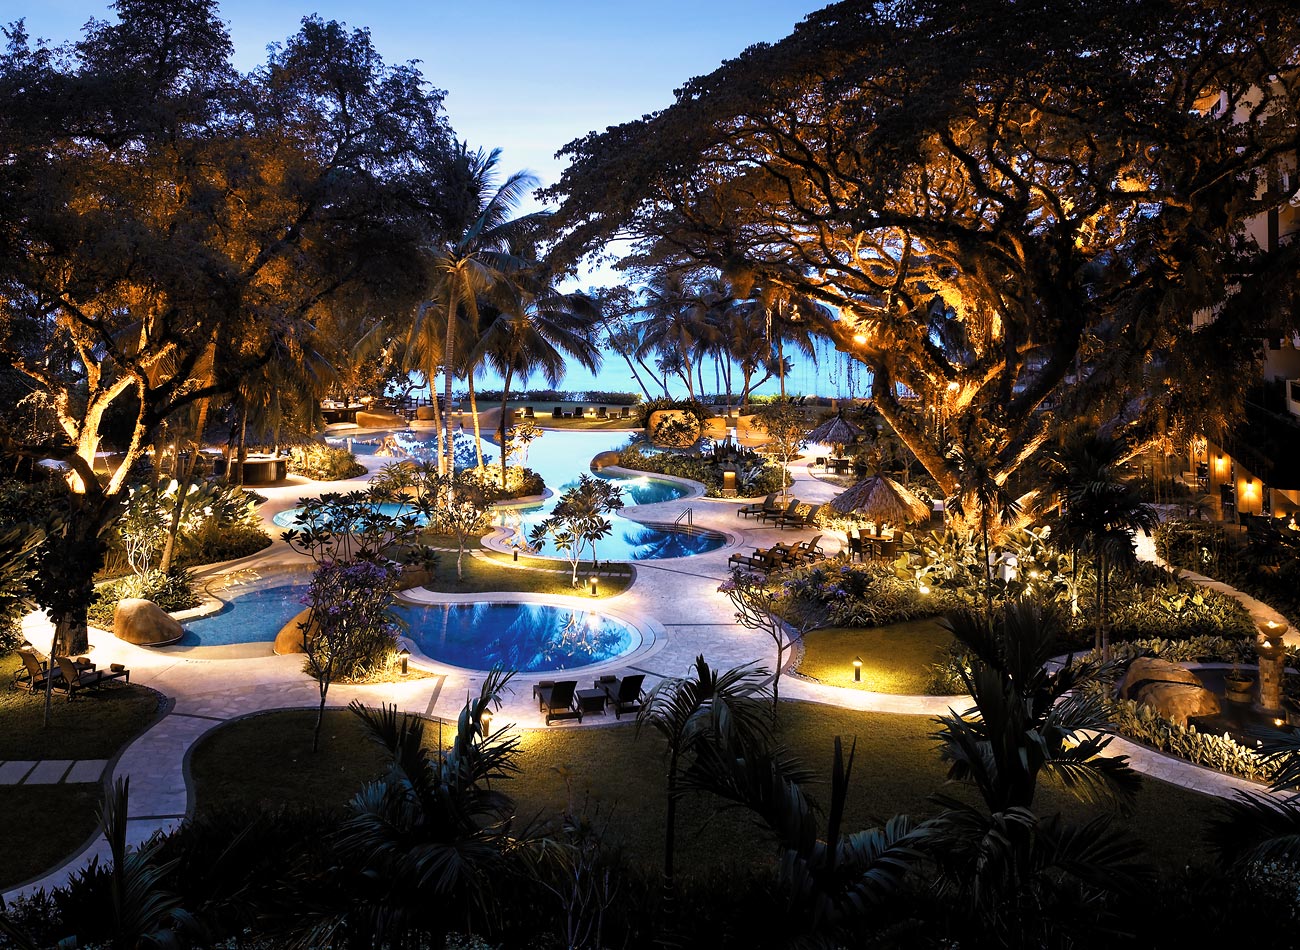 Penang Luxury Beach Resort - 5 Star Hotel | Shangri-La's Rasa Sayang